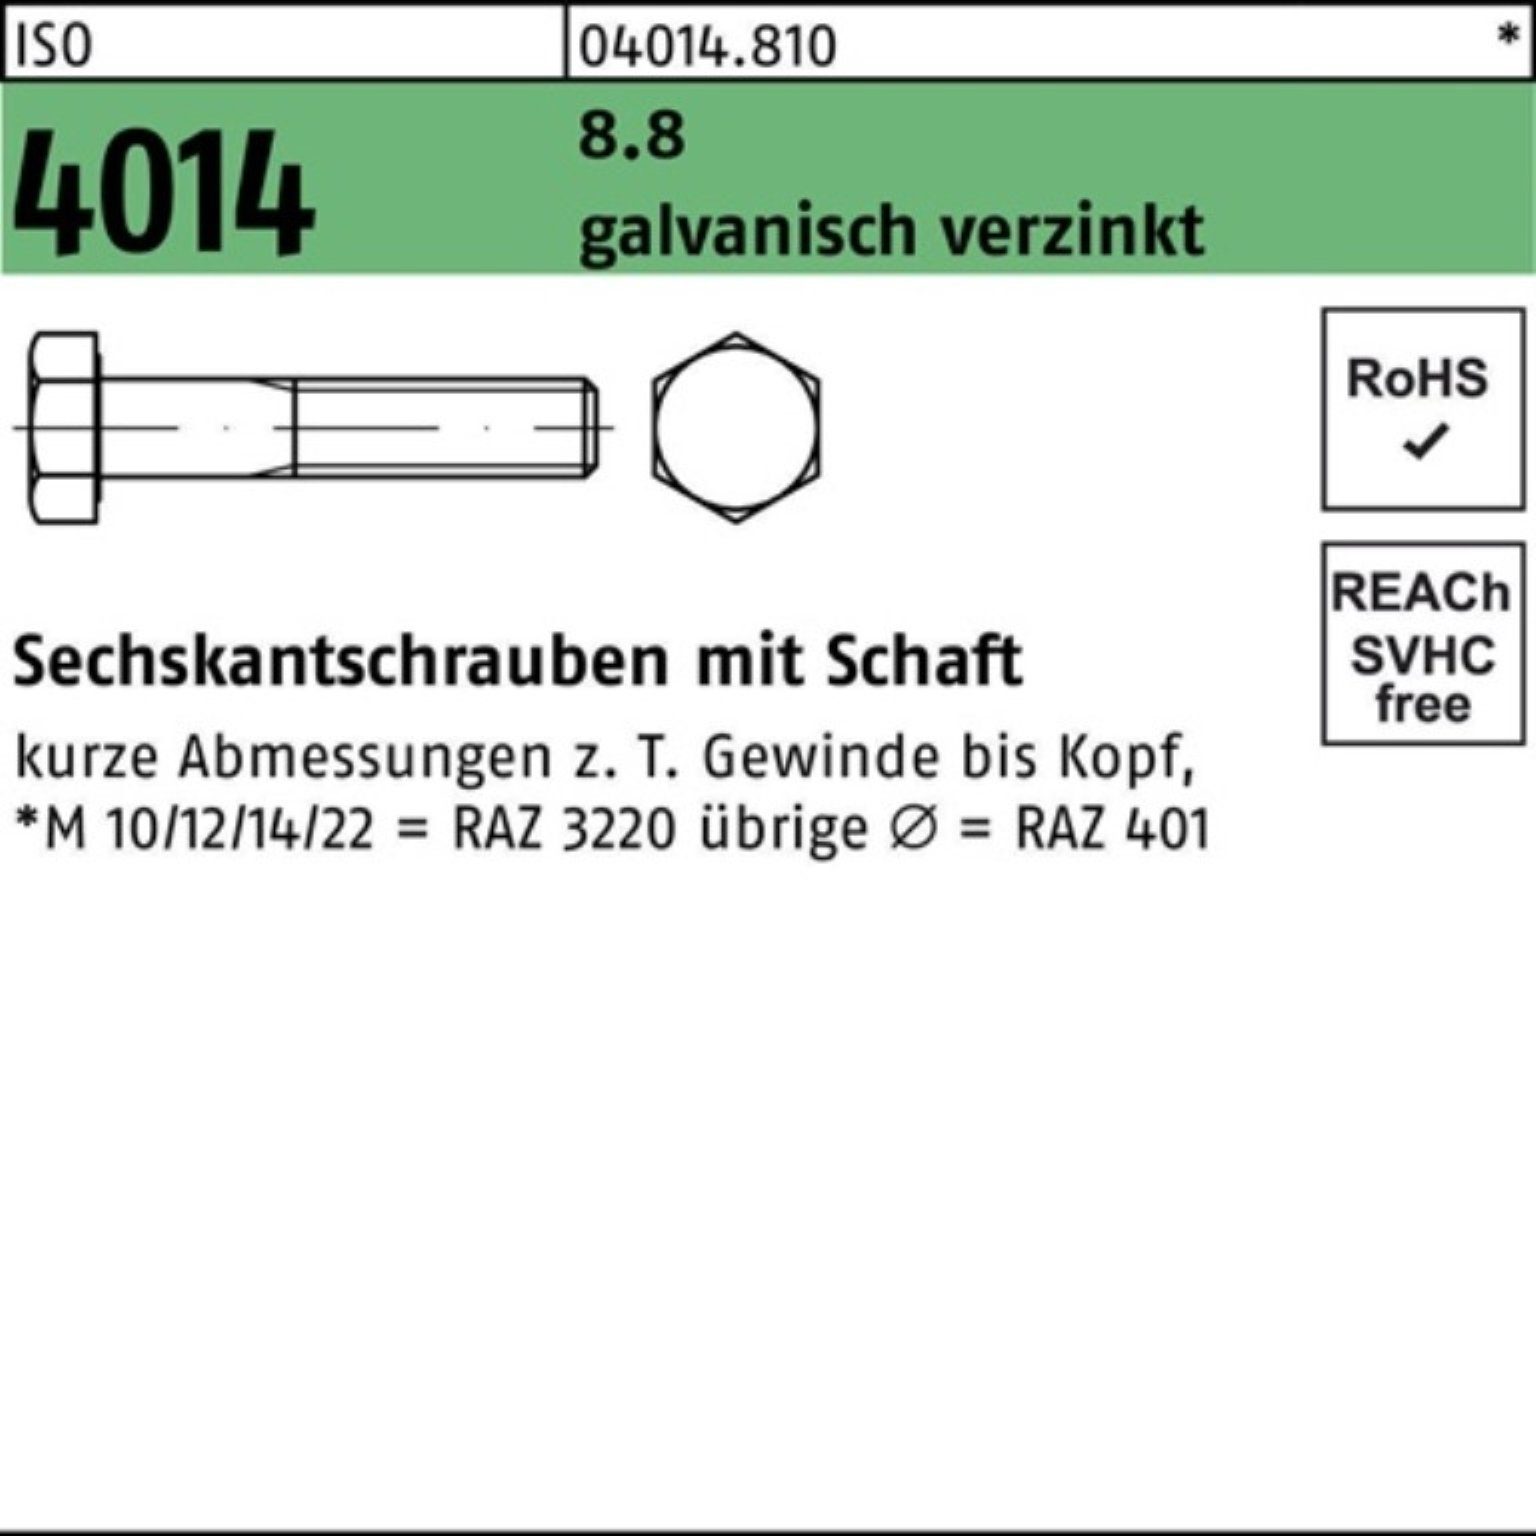 Bufab Sechskantschraube 100er Sechskantschraube M10x 8.8 5 4014 galv.verz. ISO Pack Schaft 170